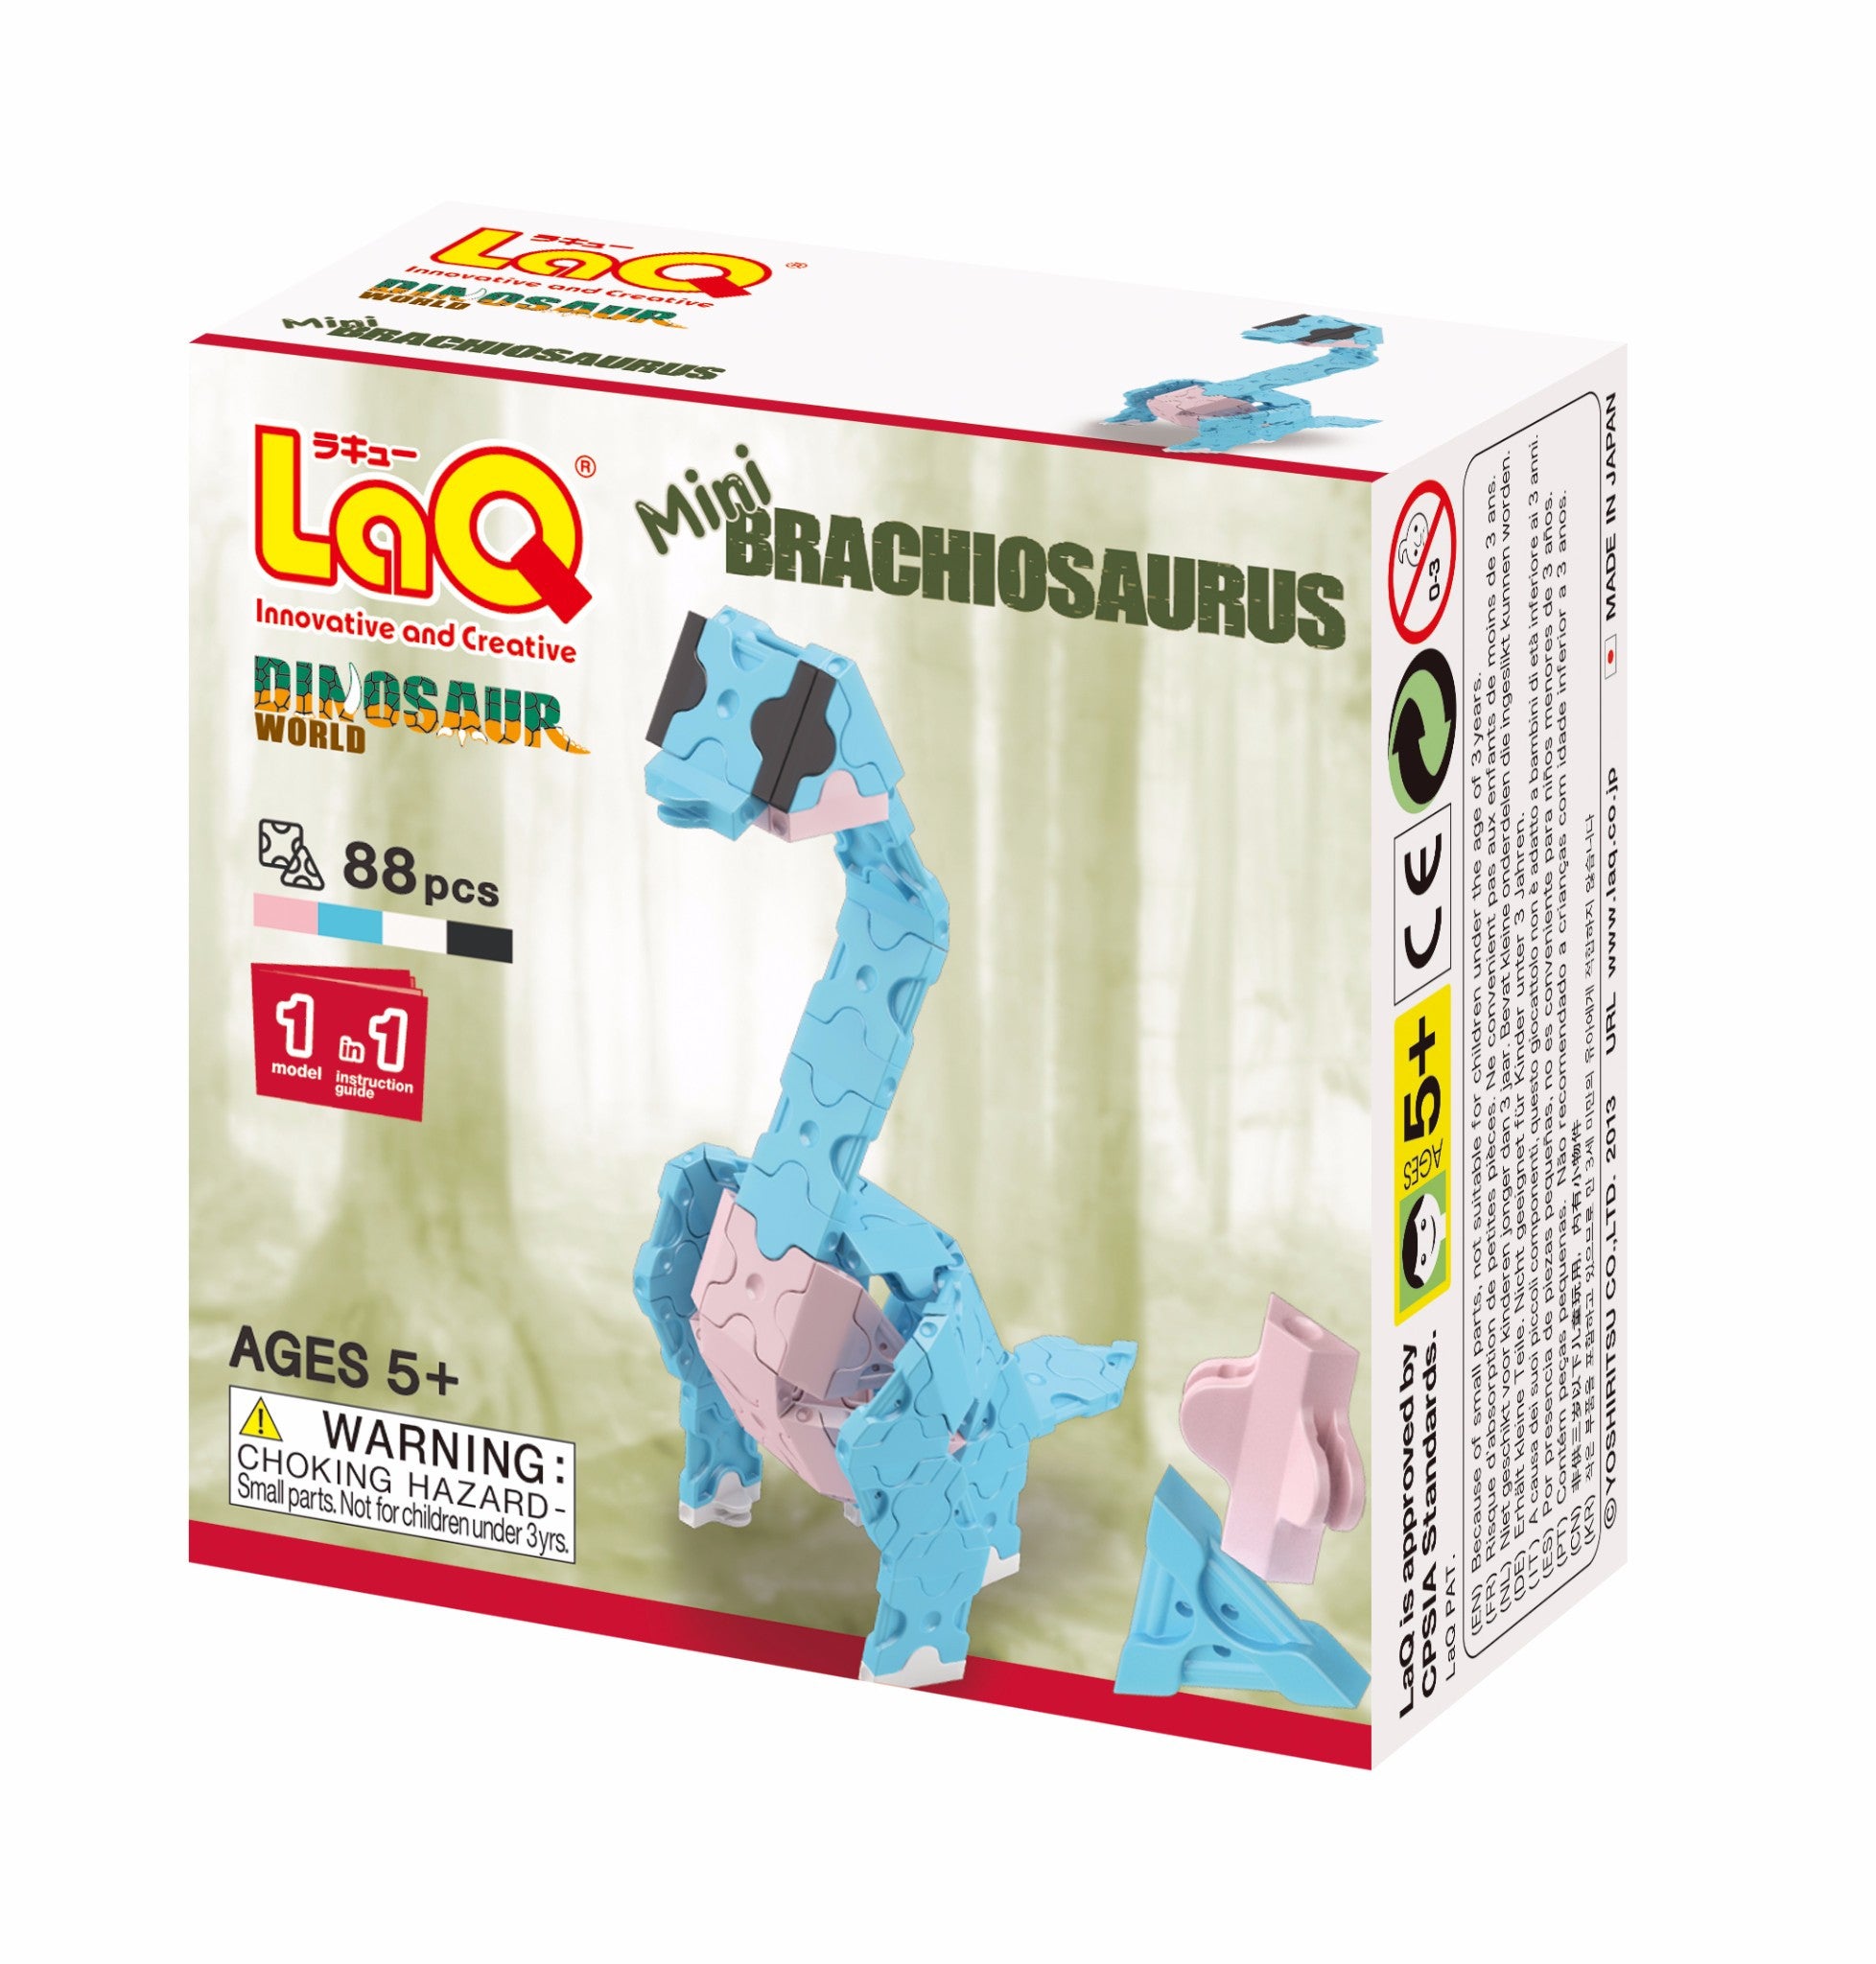 LaQ Dinosaur World - Mini Brachiosaurus LAQ001801 by LaQ Blocks